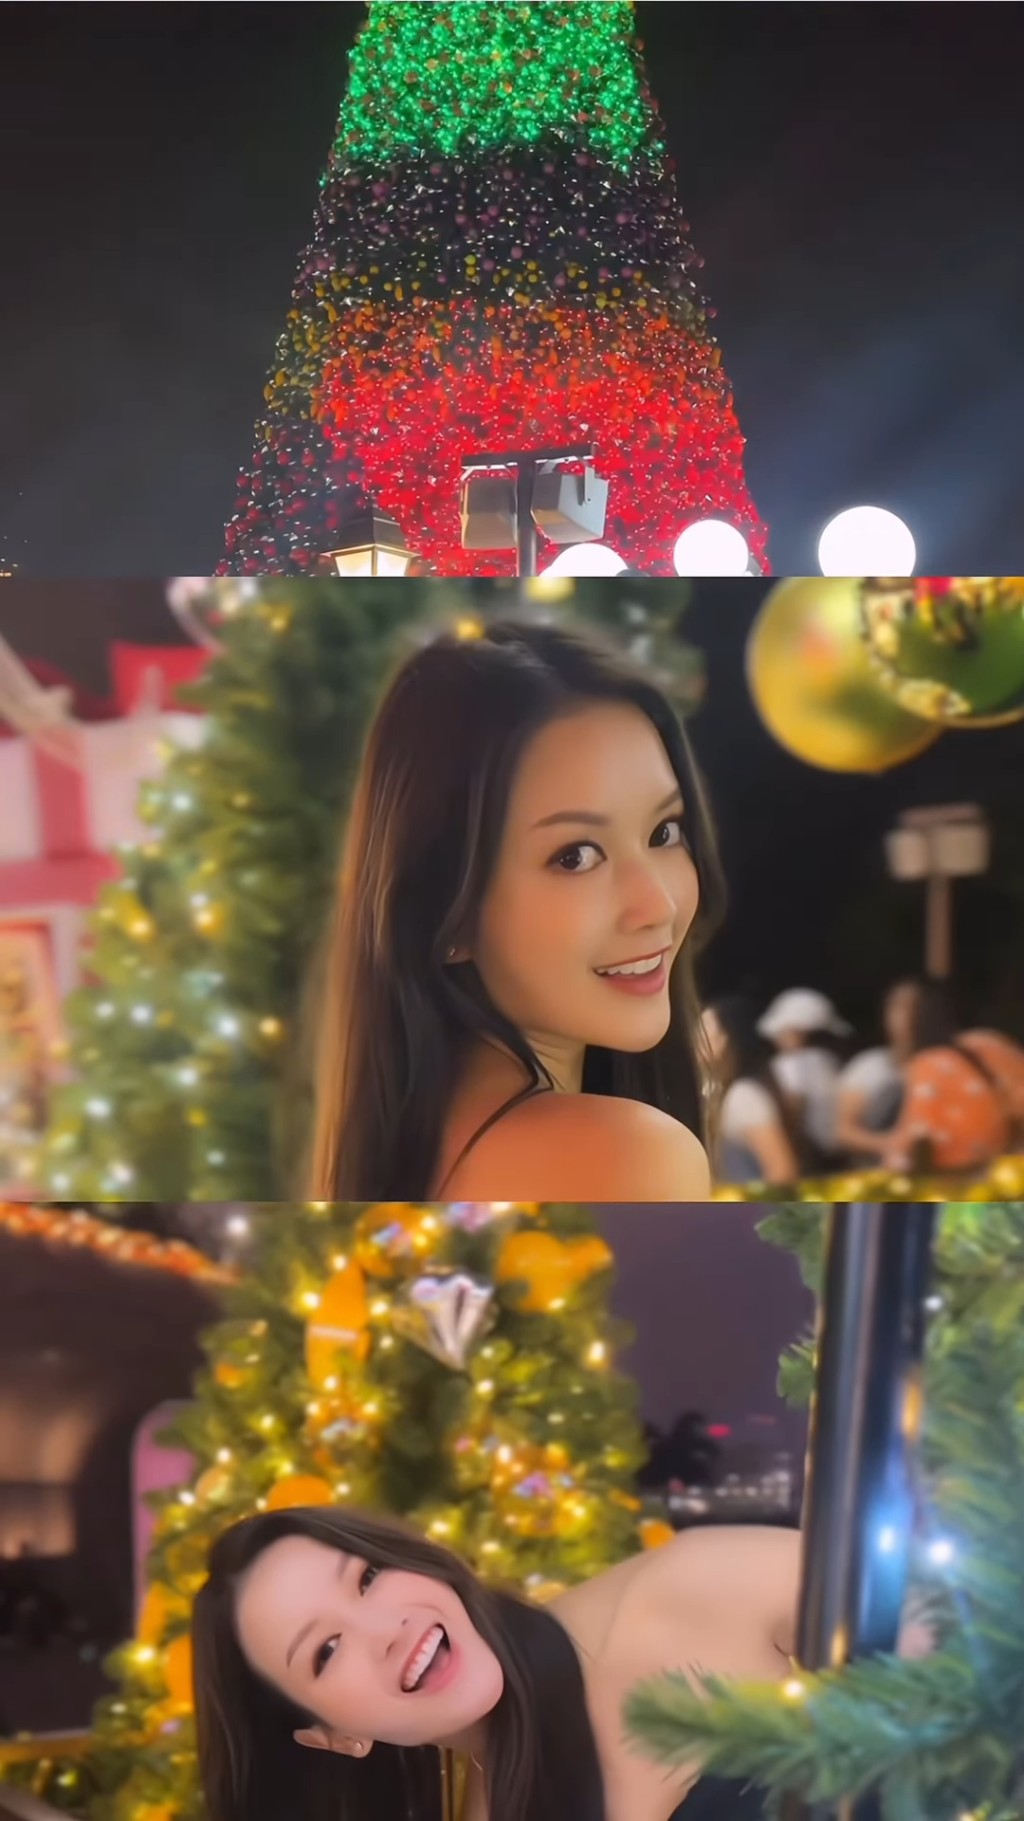 另一TVB小花锺晴都有分享圣诞相。